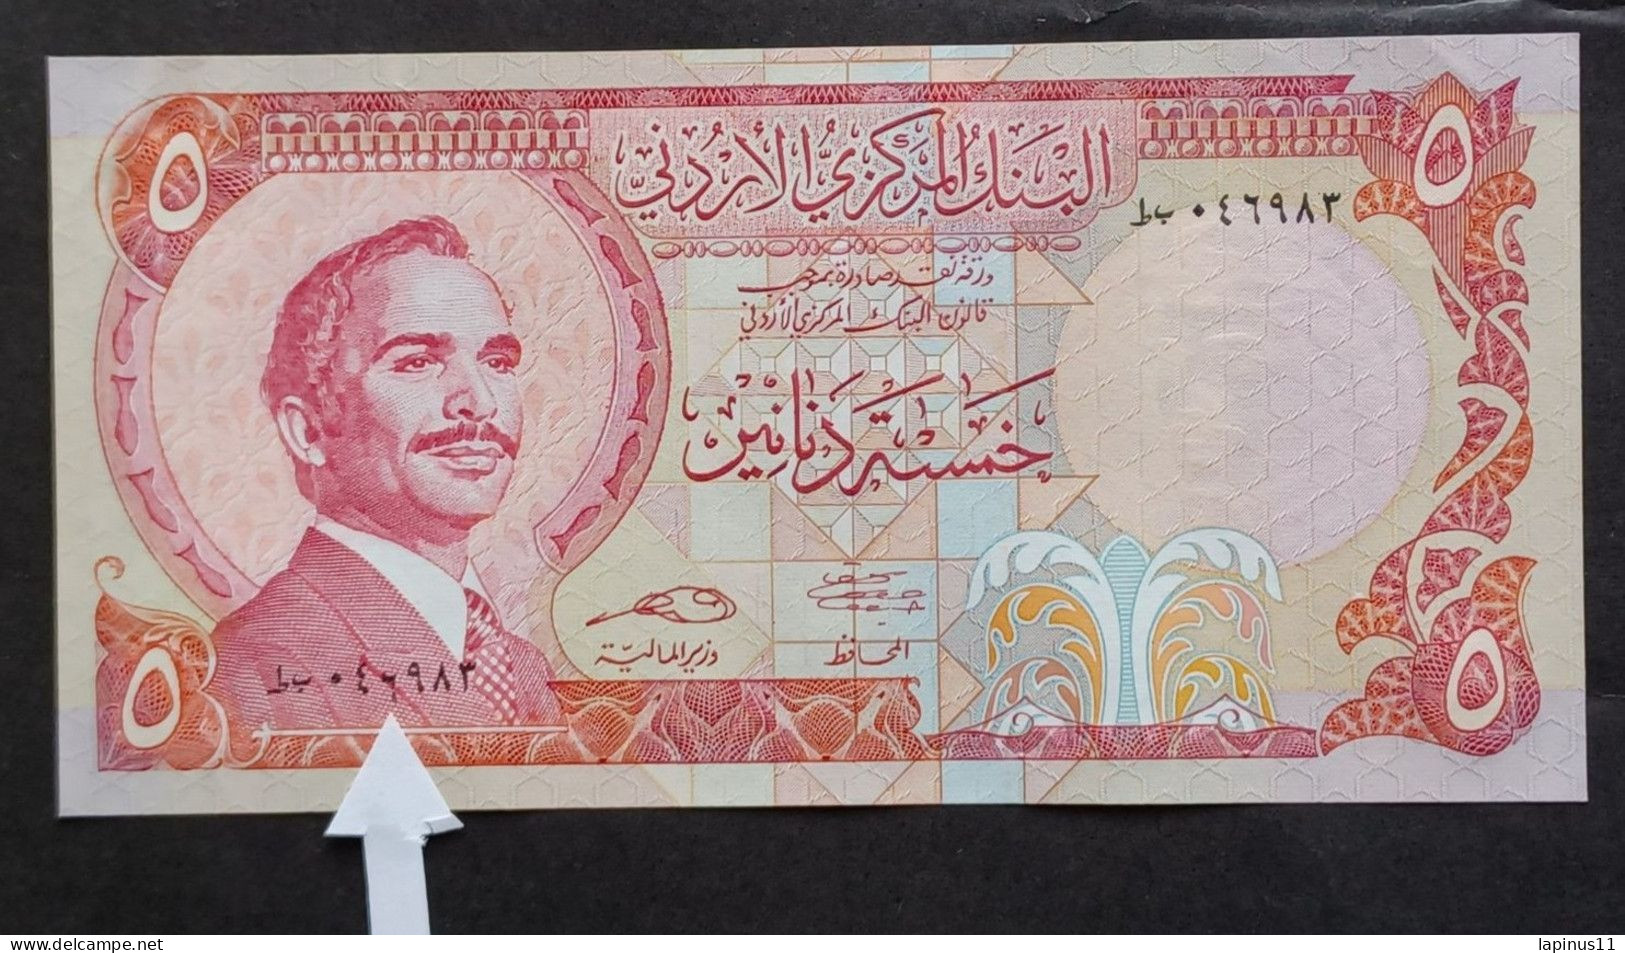 BANKNOTE الأردن JORDAN GIORDANIA 5 DINARS KING HUSSEIN 1975 ERROR PRINT NUMBER 6 LOW UNC 8 PIECES SYRIAL NUMBER - Jordanie